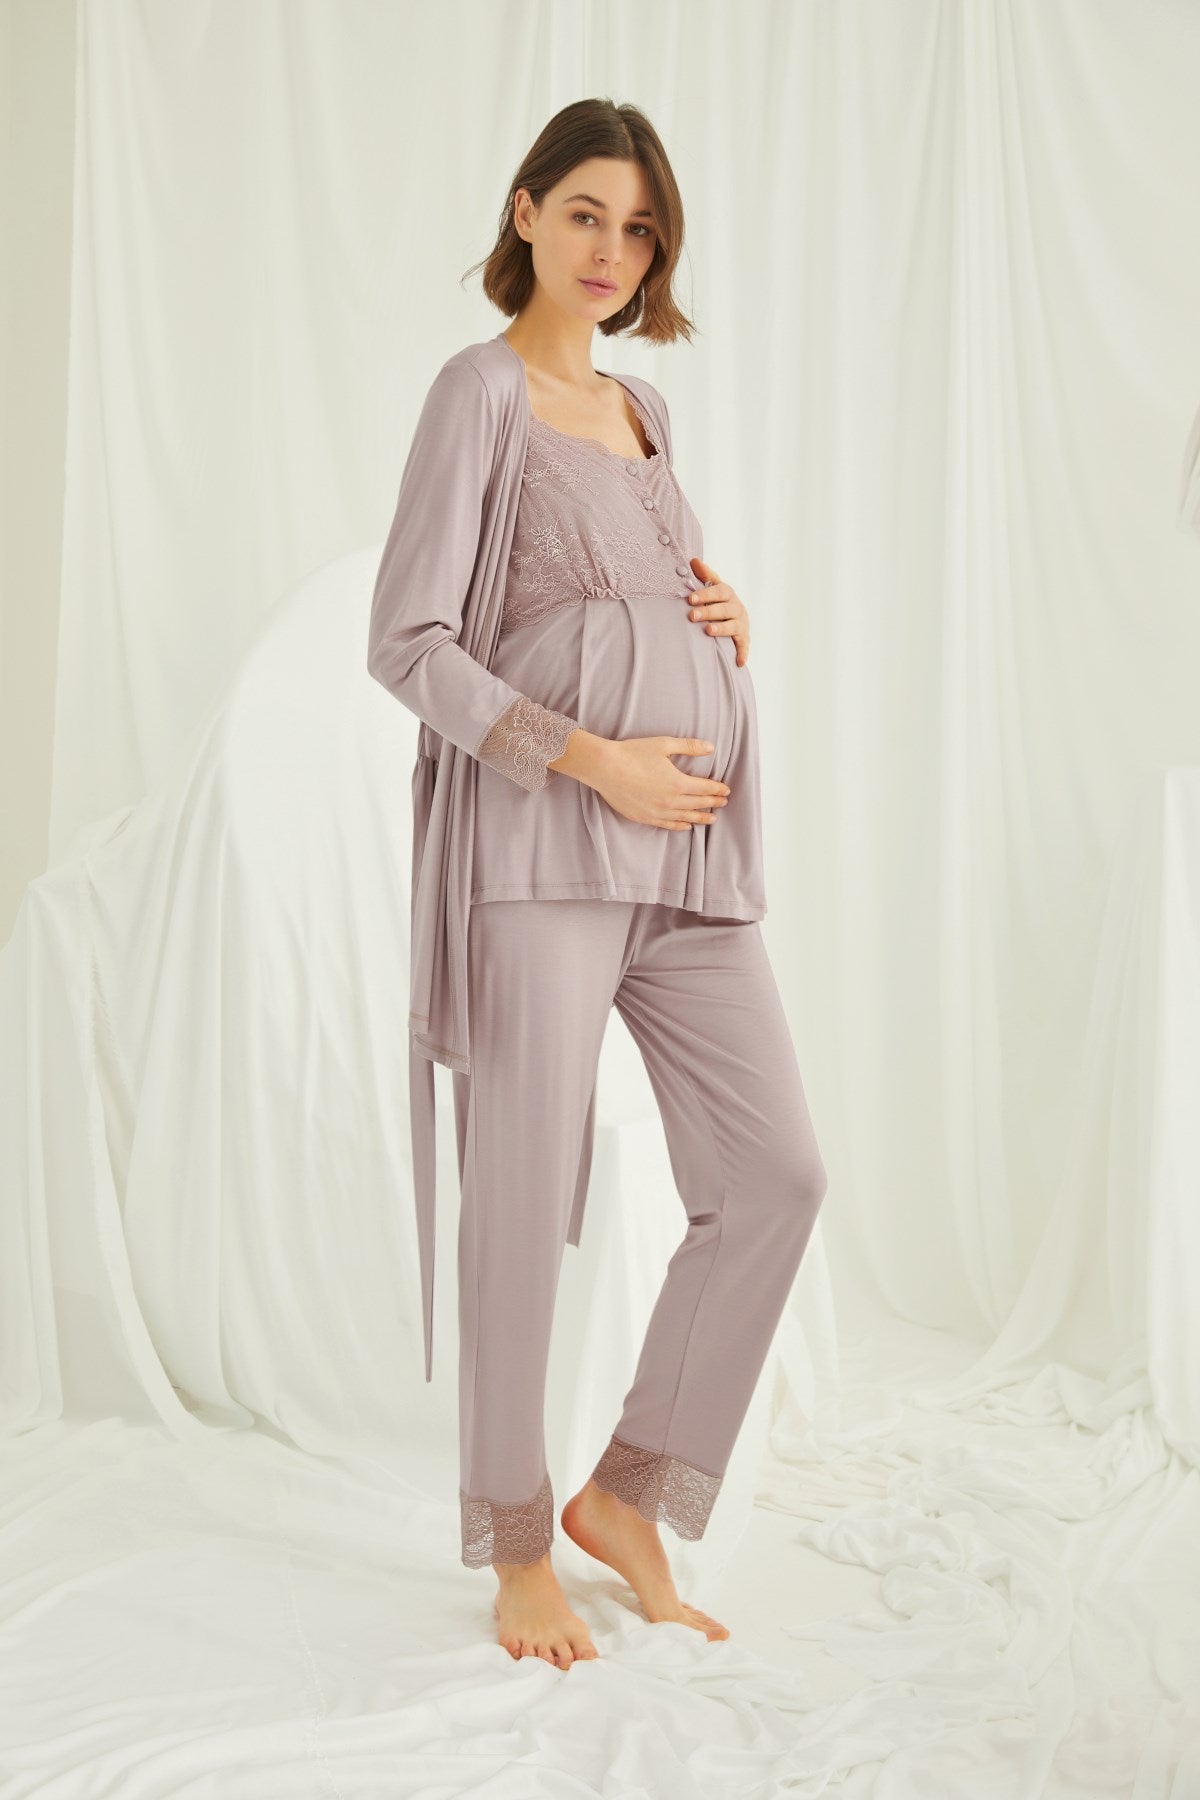 Shopymommy 24154 Embroidery Maternity & Nursing Nightgown Ecru